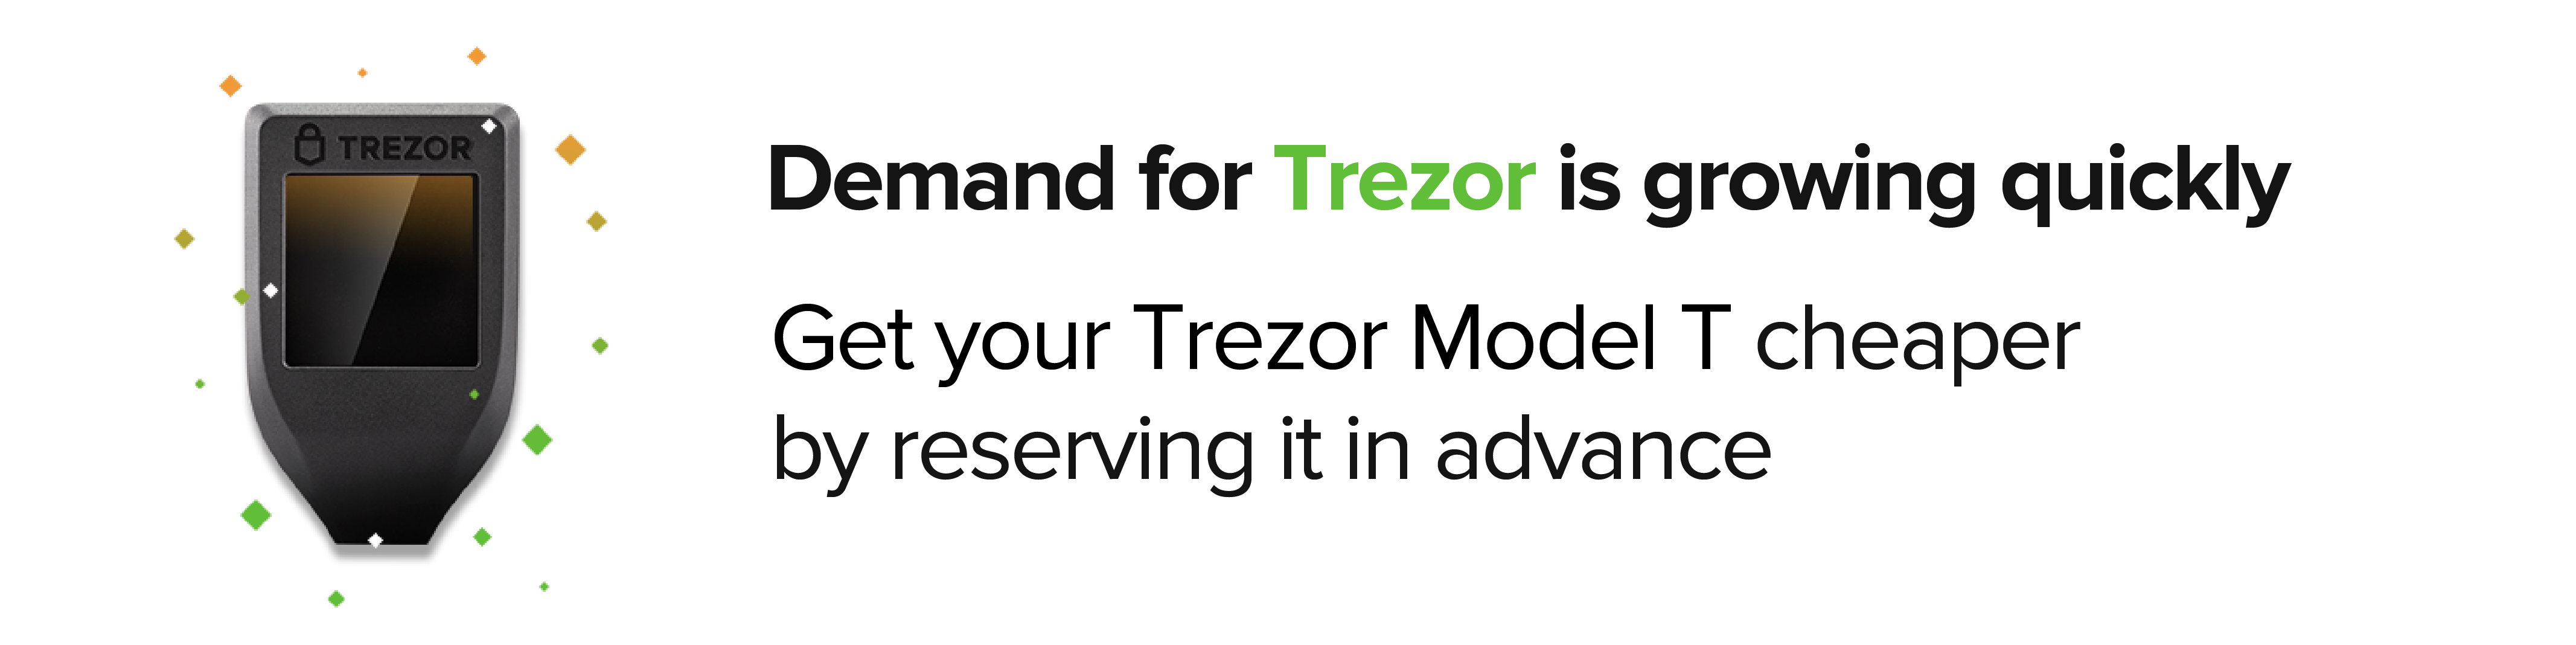 Trezor Model T